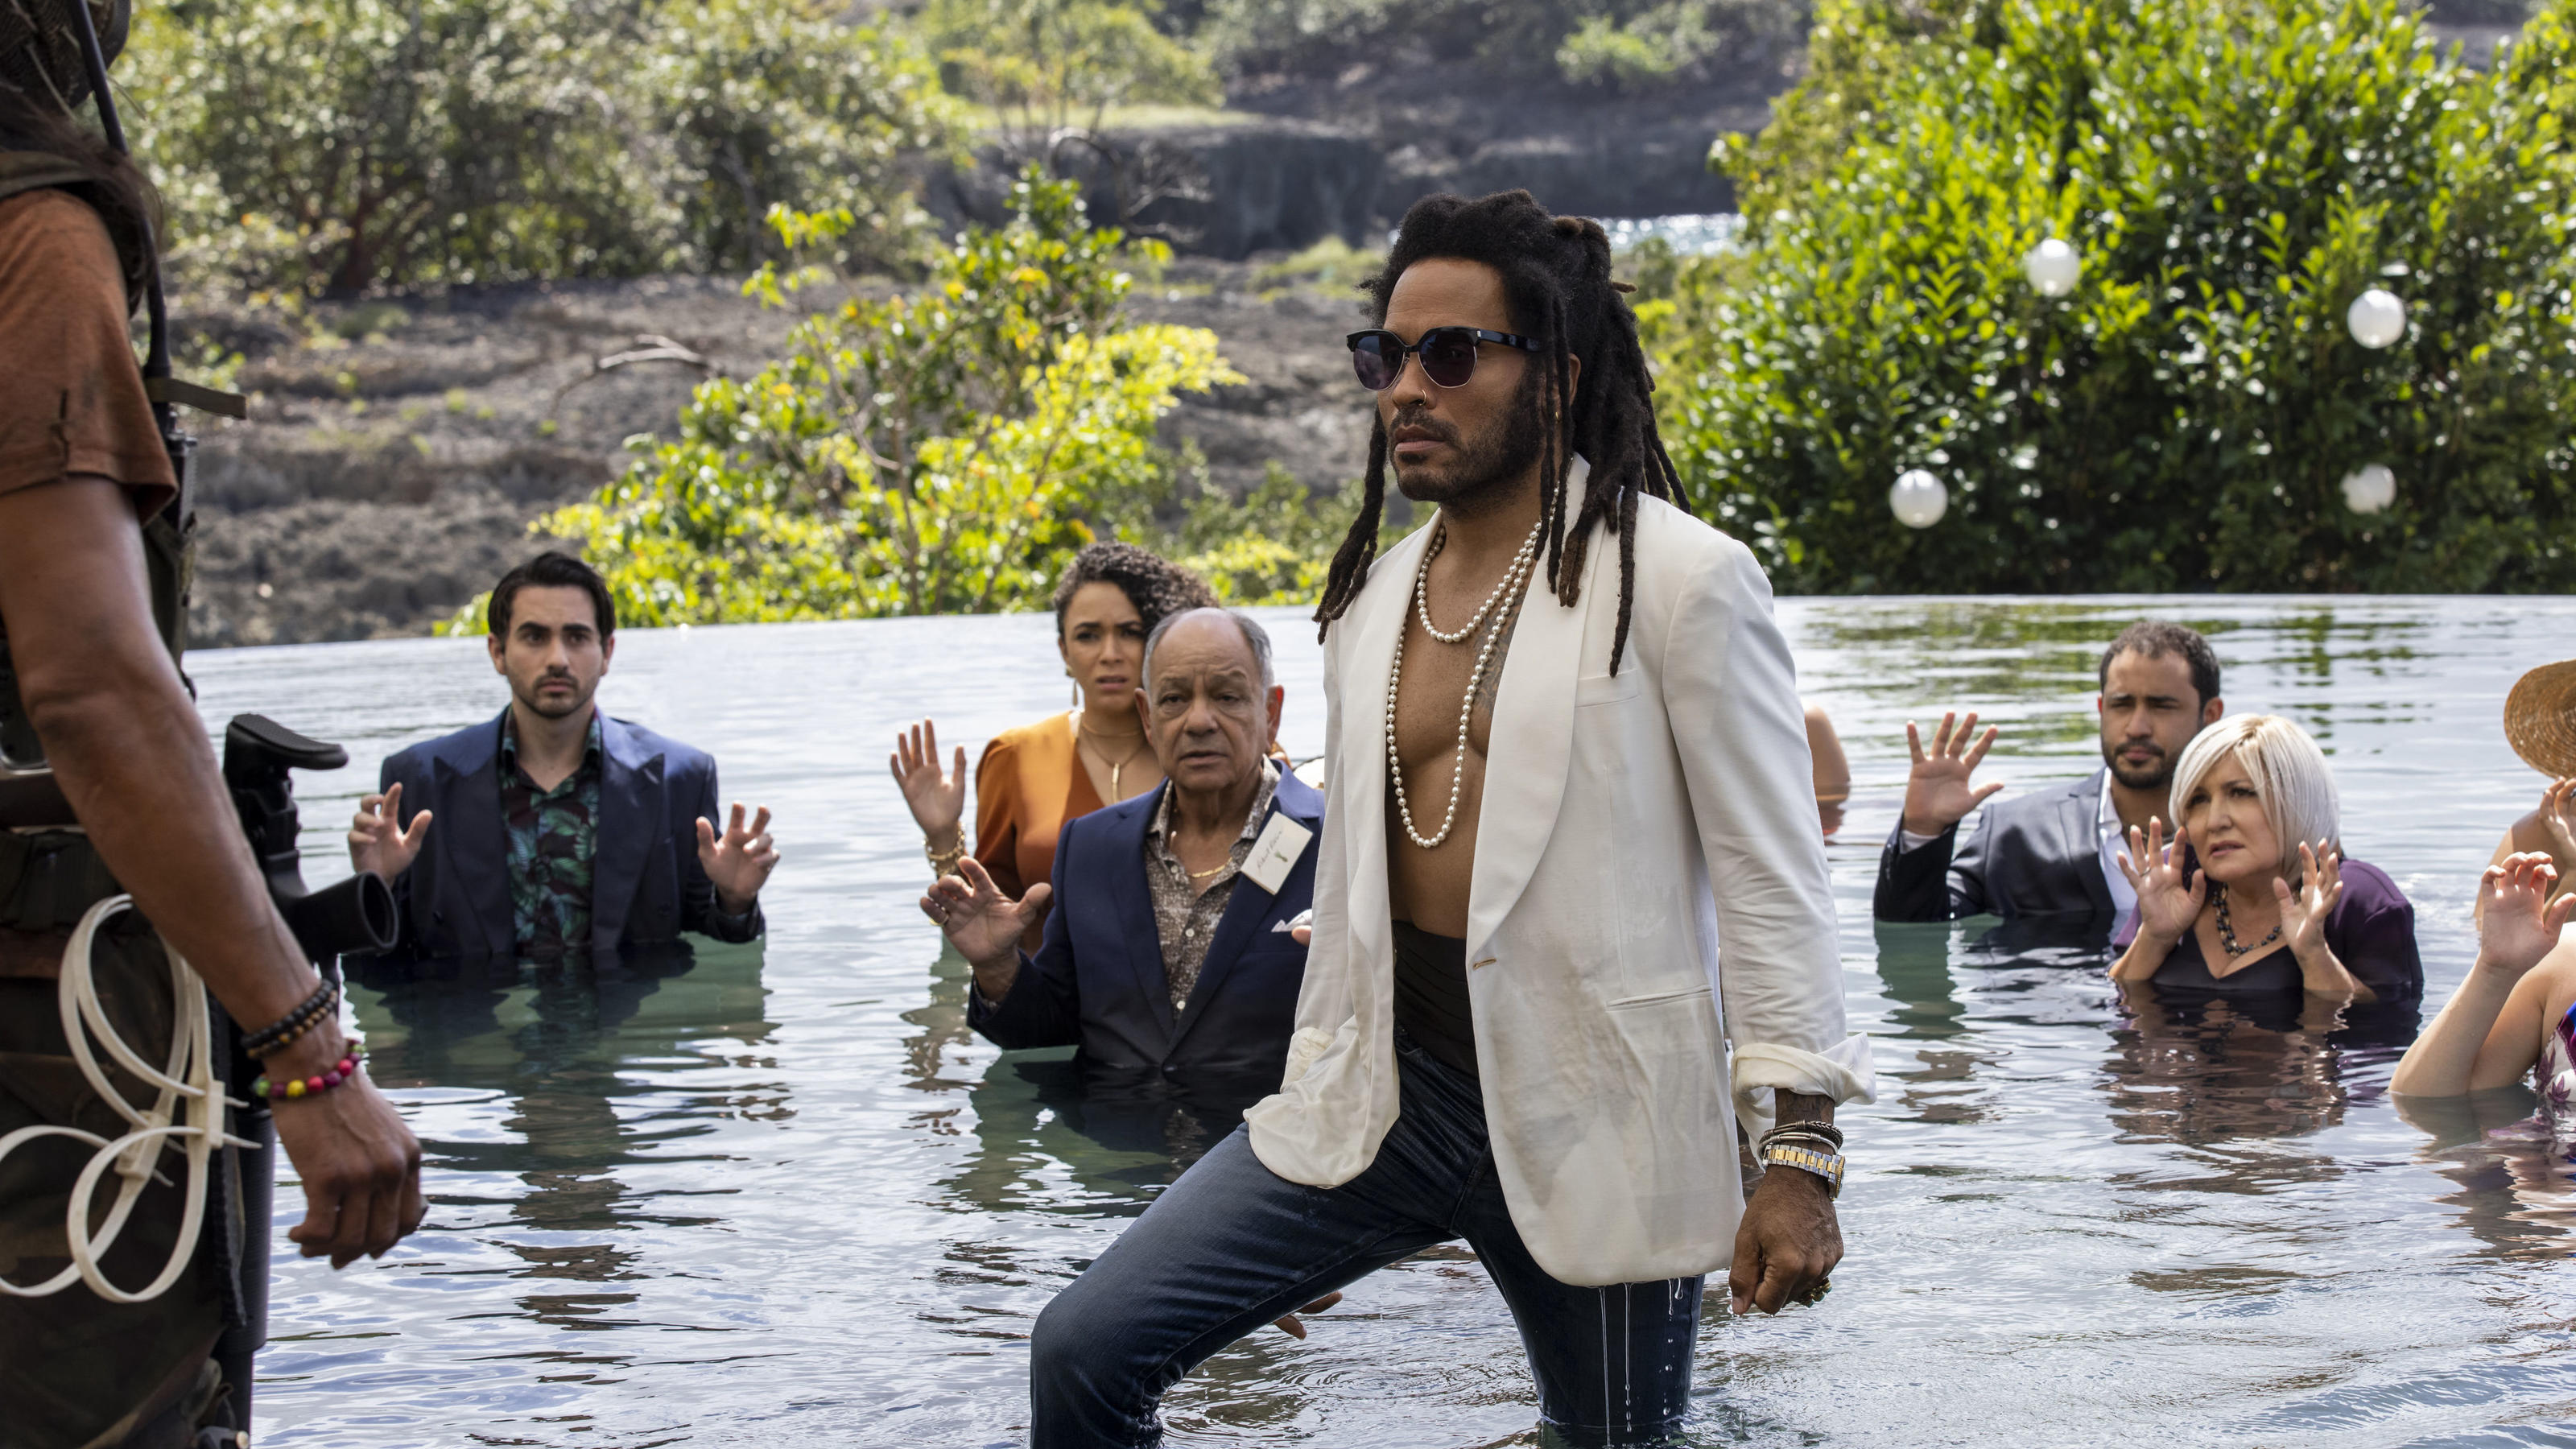 Steht cooler als die anderen im Wasser rum: Lenny Kravitz